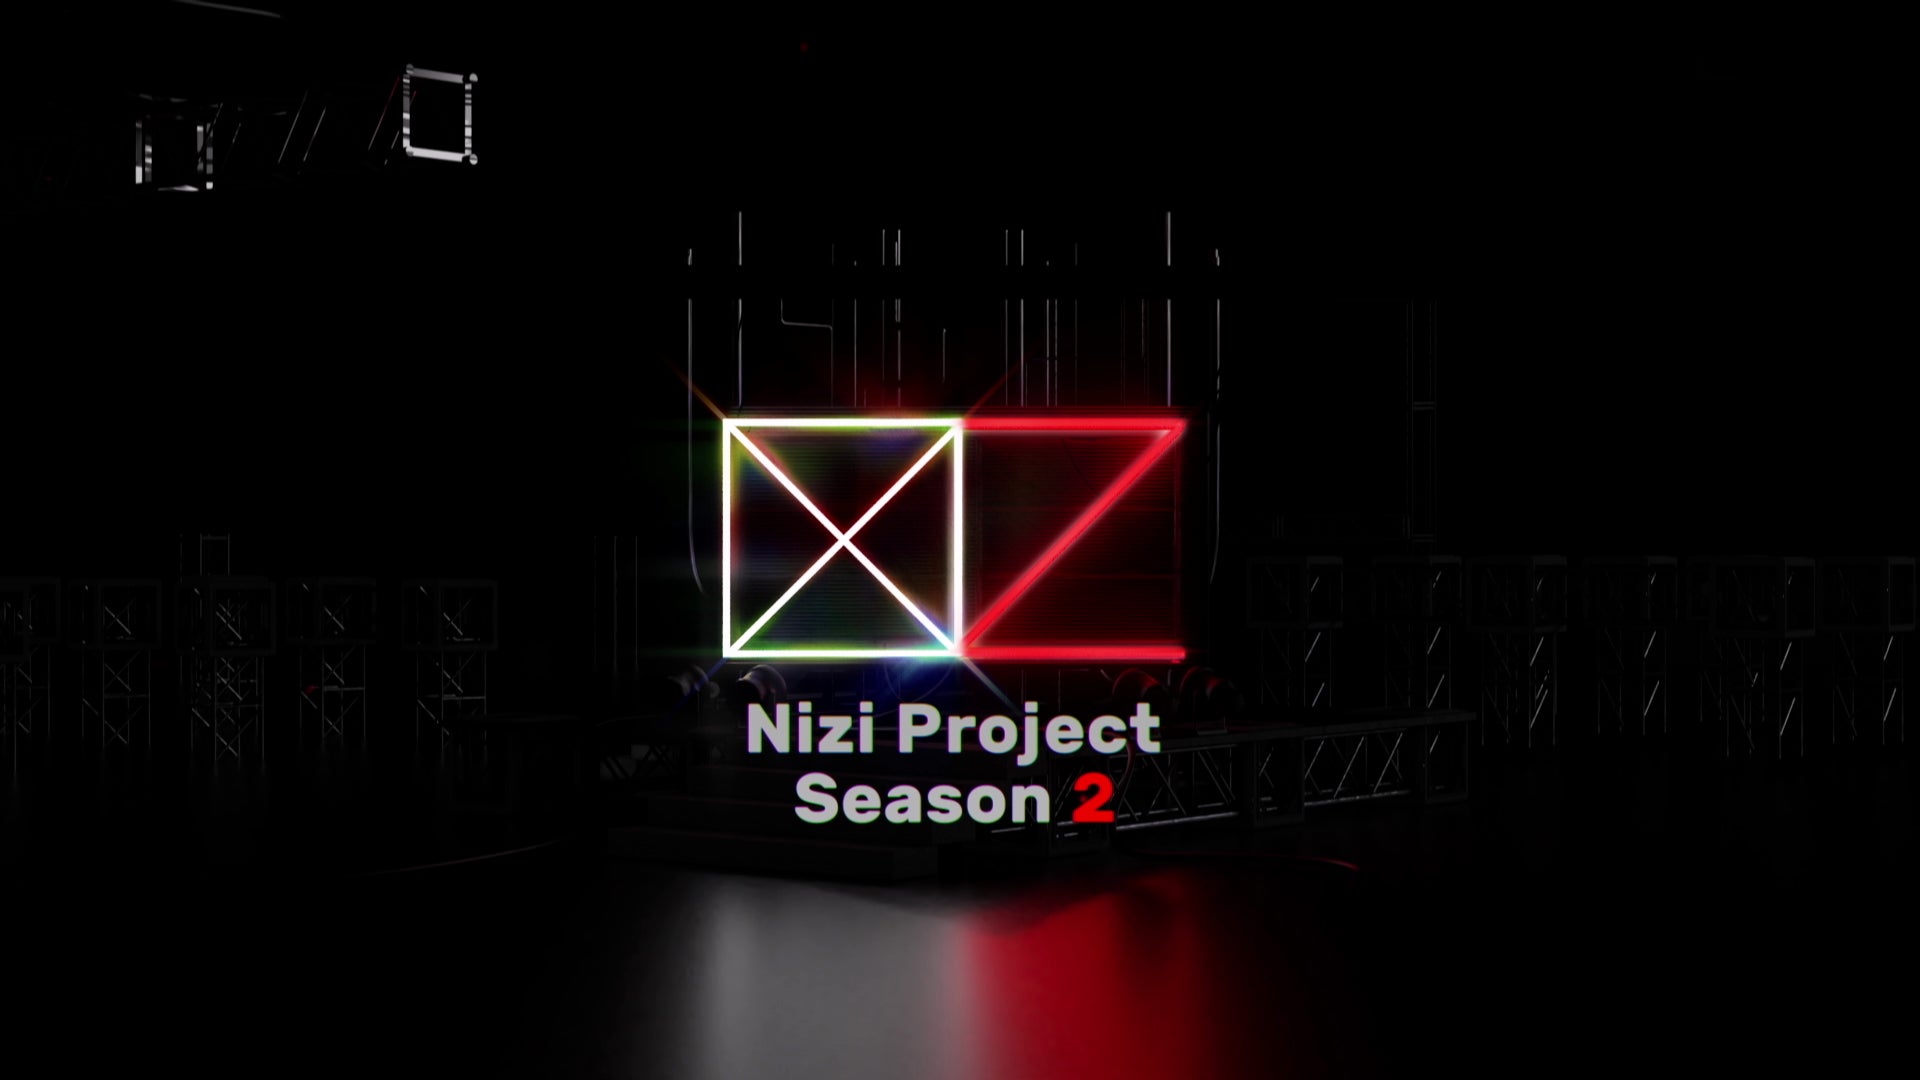 ソニーミュージックとJYPの日韓合同オーディション・プロジェクト「Nizi Project Season 2」、ついにデビューメンバーが決まる韓国編・Part 2の情報を解禁！！